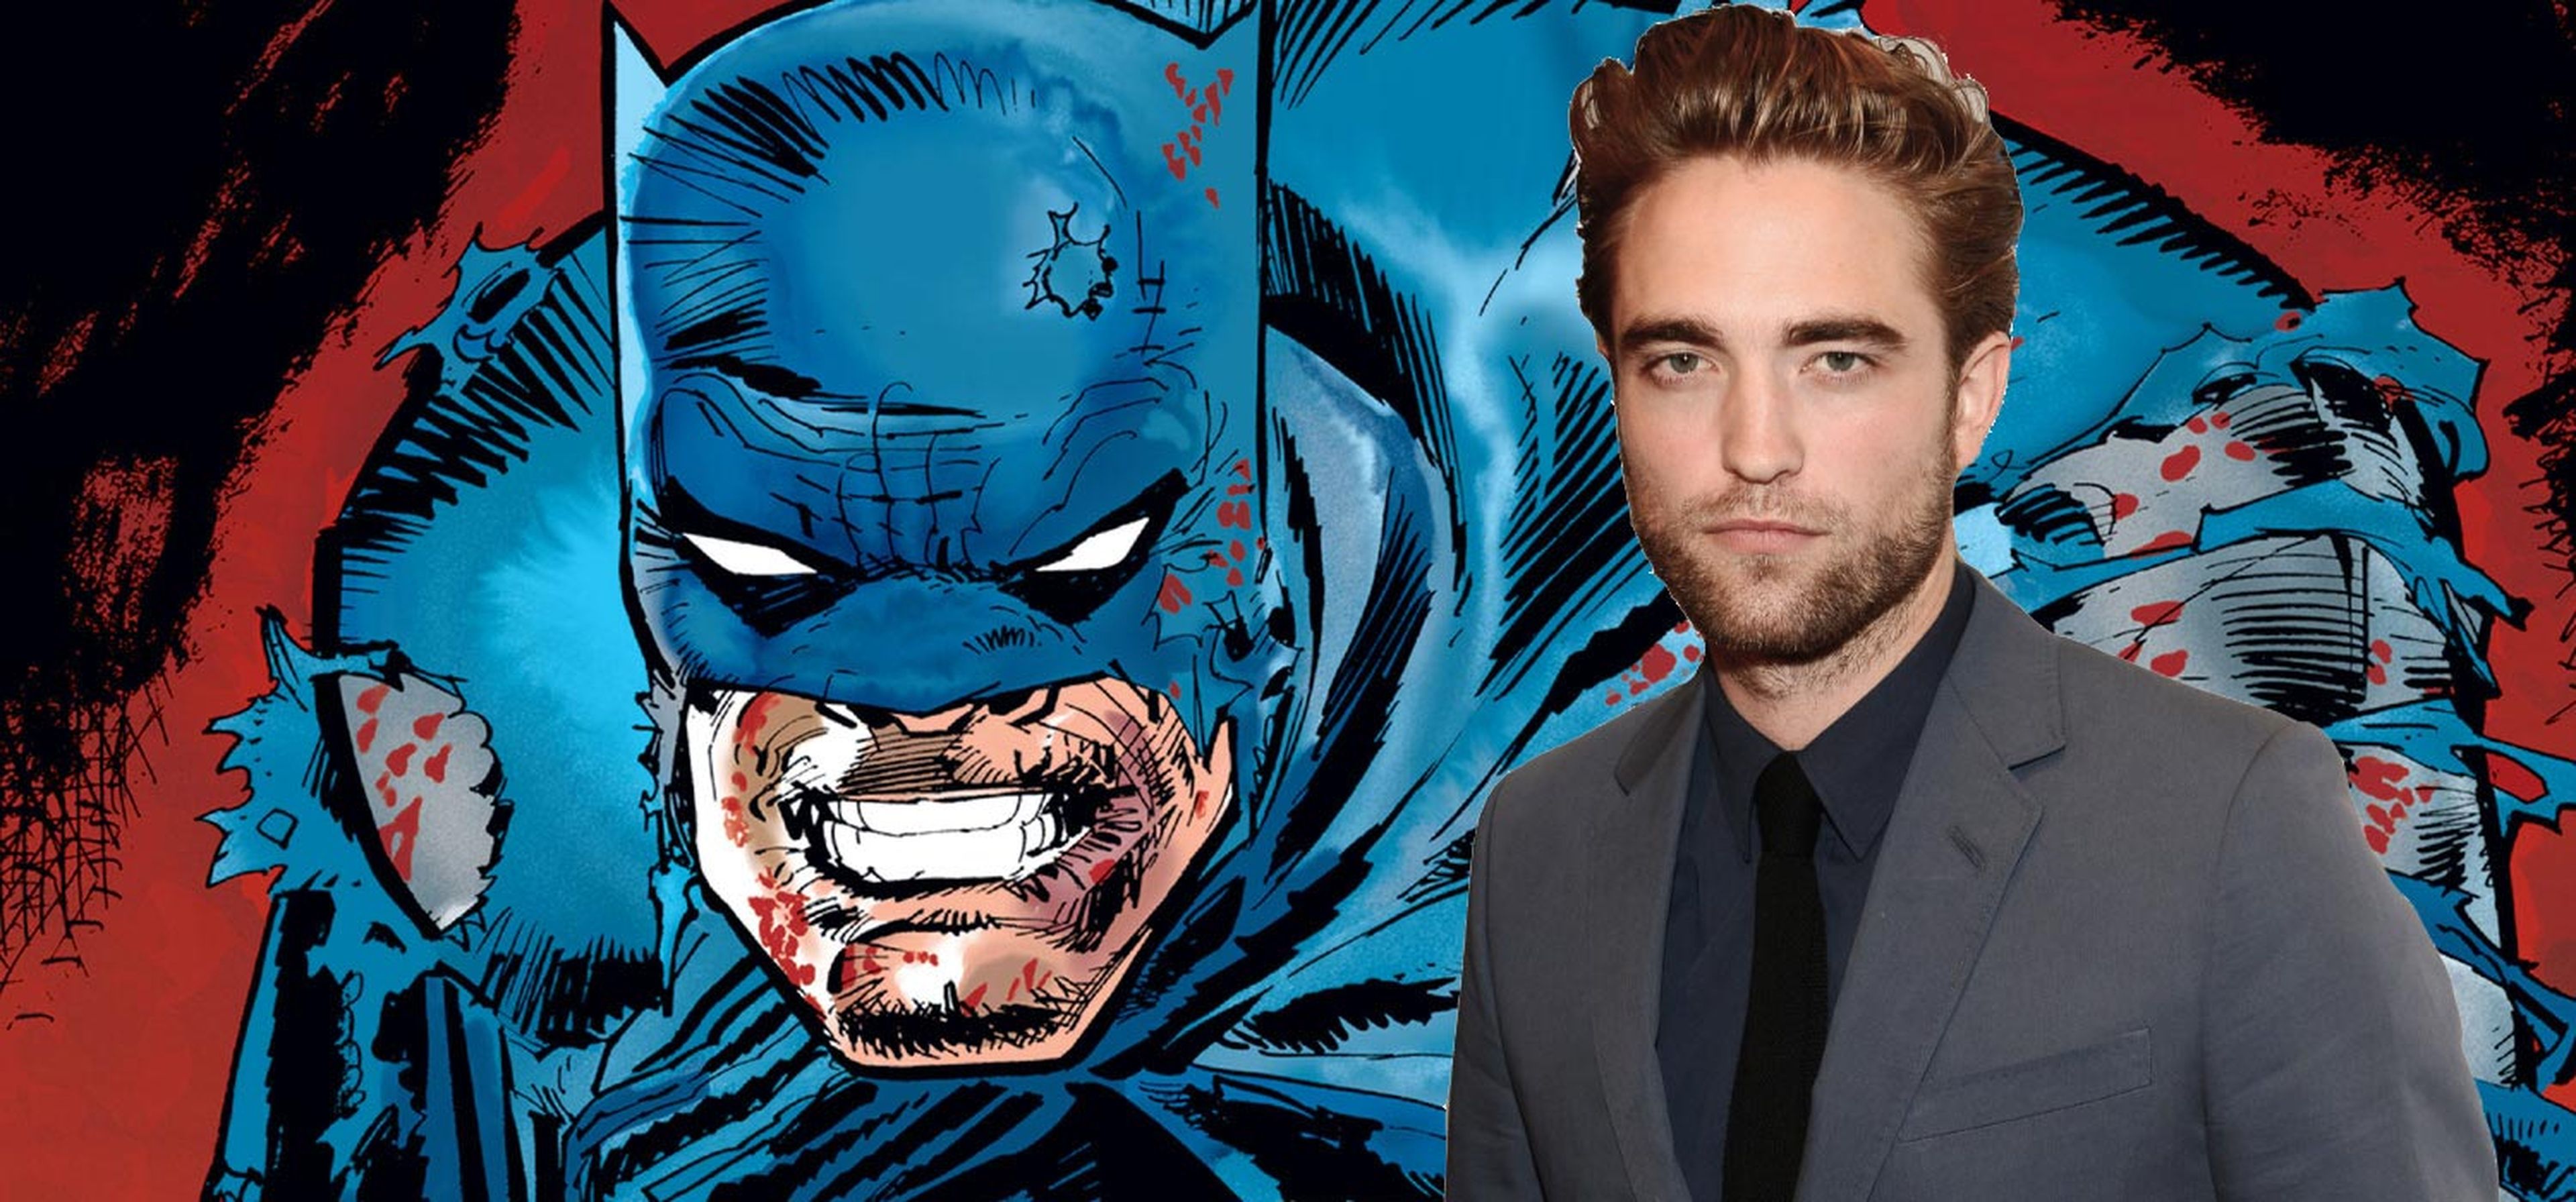 ¿Robert Pattinson es una buena elección como nuevo Batman?